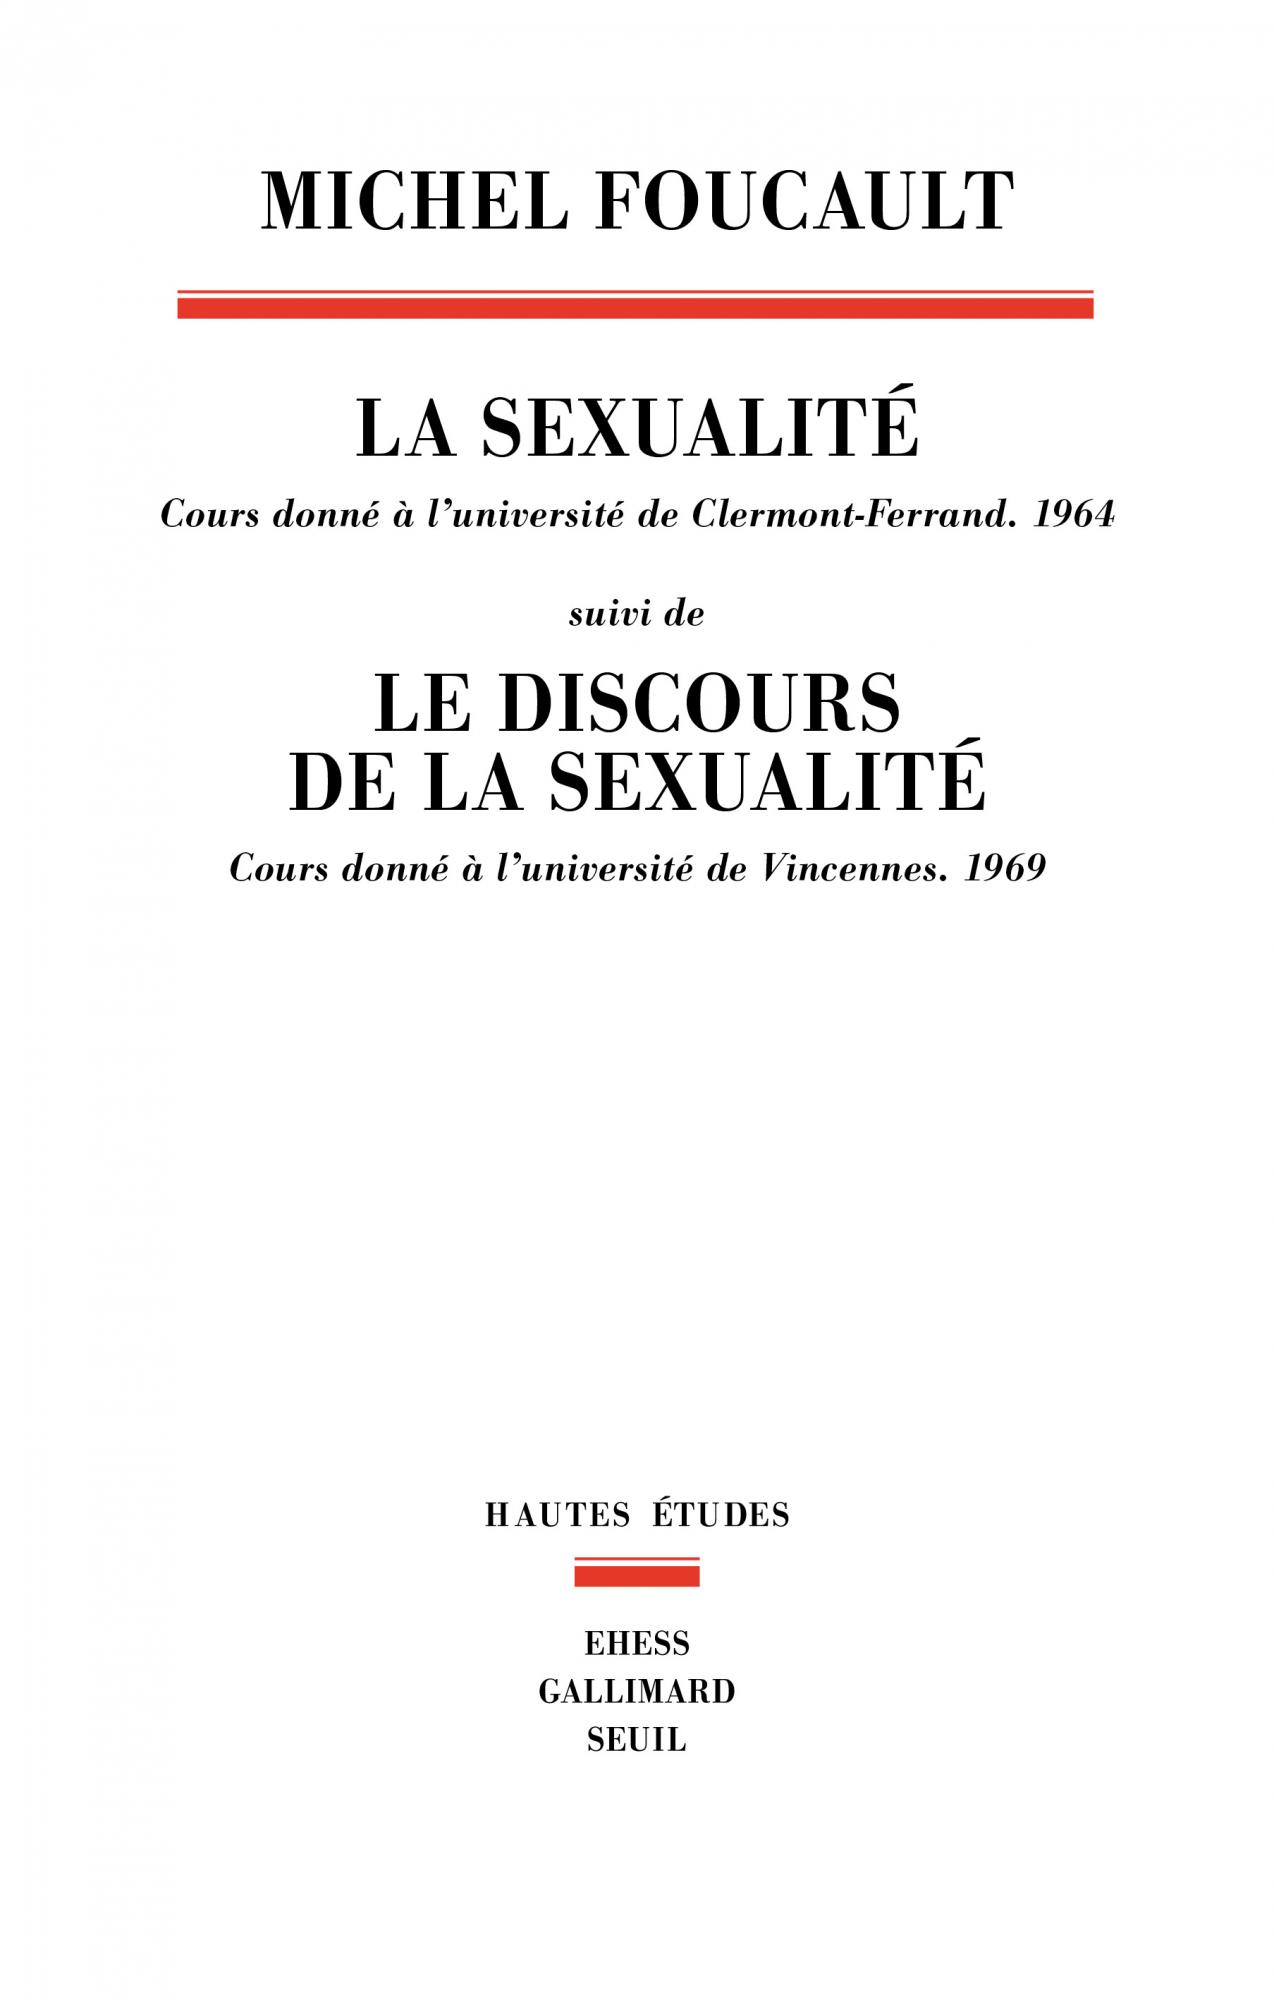 Image La sexualité : cours donné à l'université de Clermont-Ferrand (1964) ; suivi de Le discours de la sexualité : cours donné à l'université de Vincennes (1969)